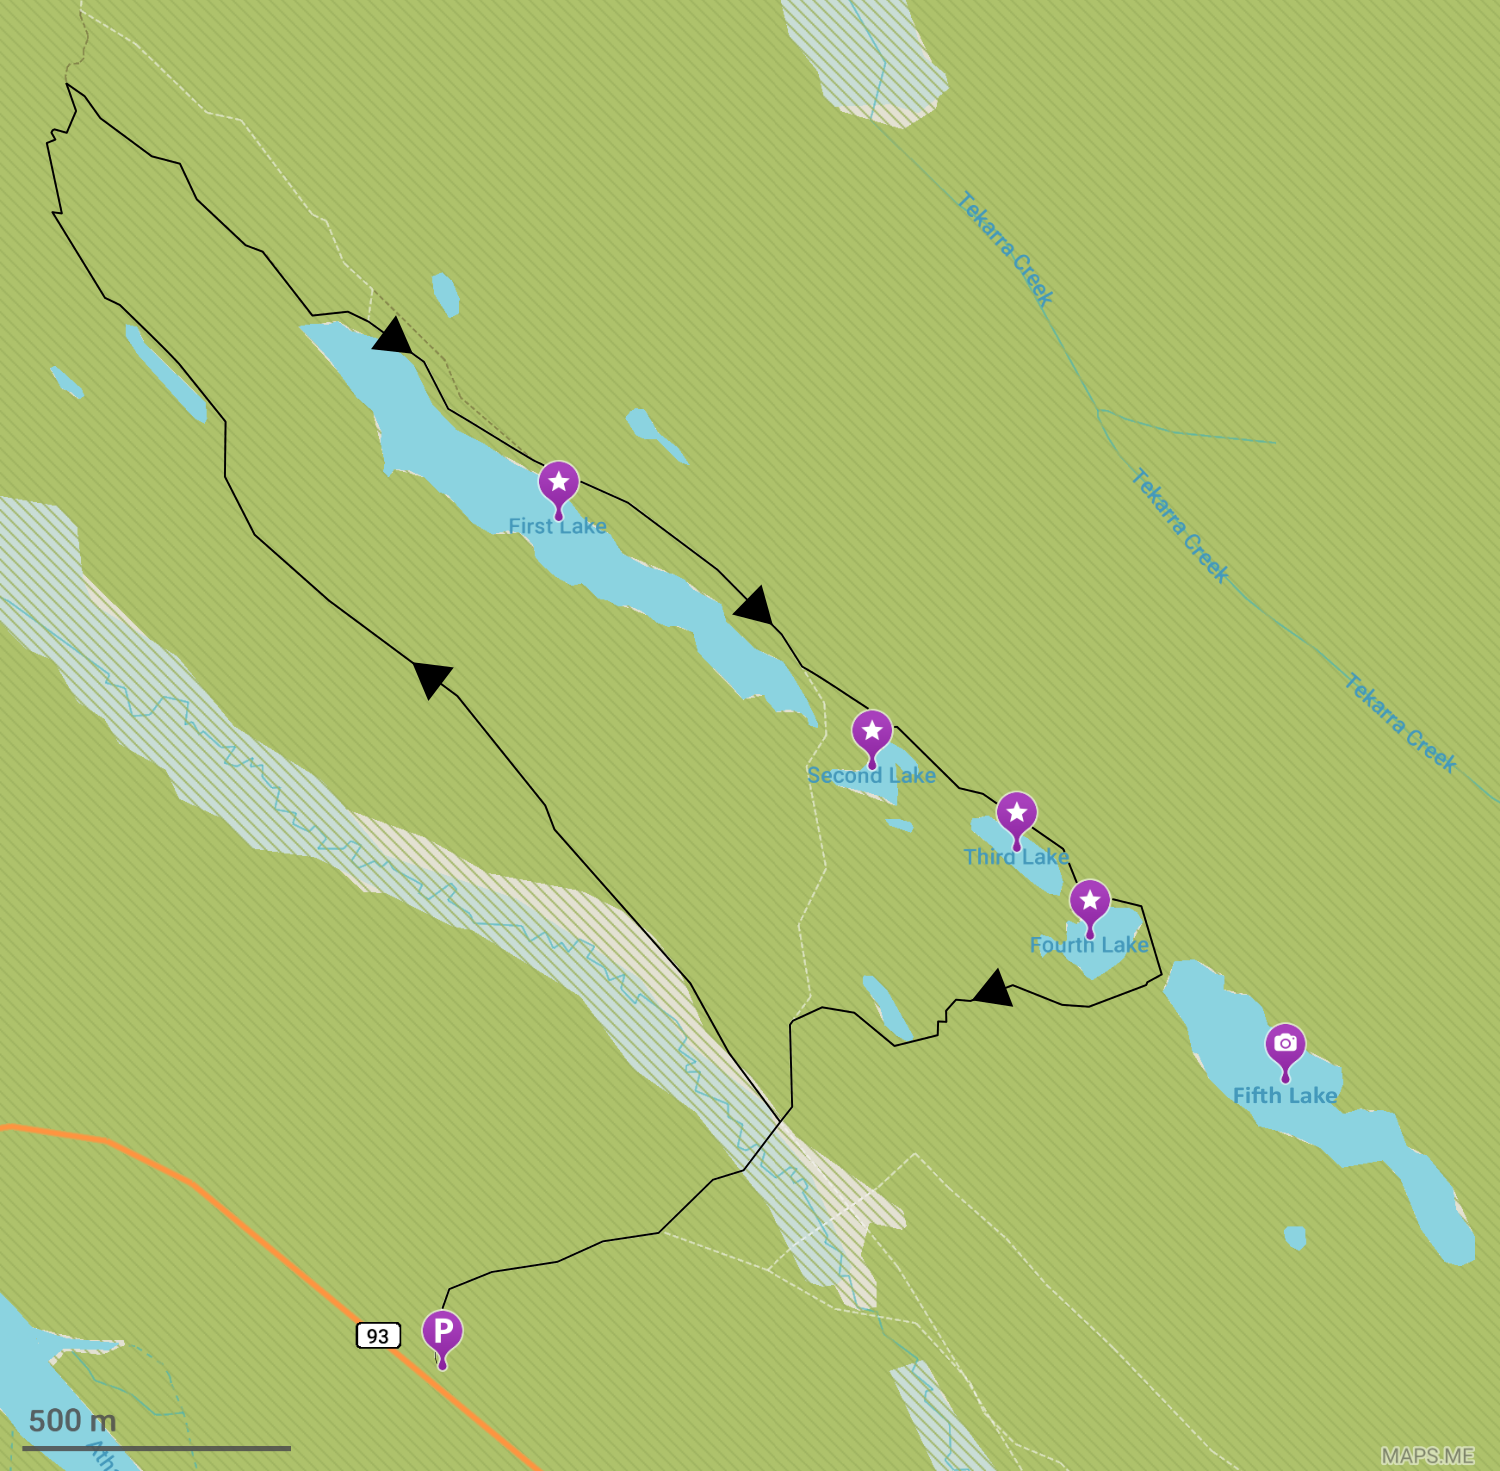 Plan du Five Lakes Trail